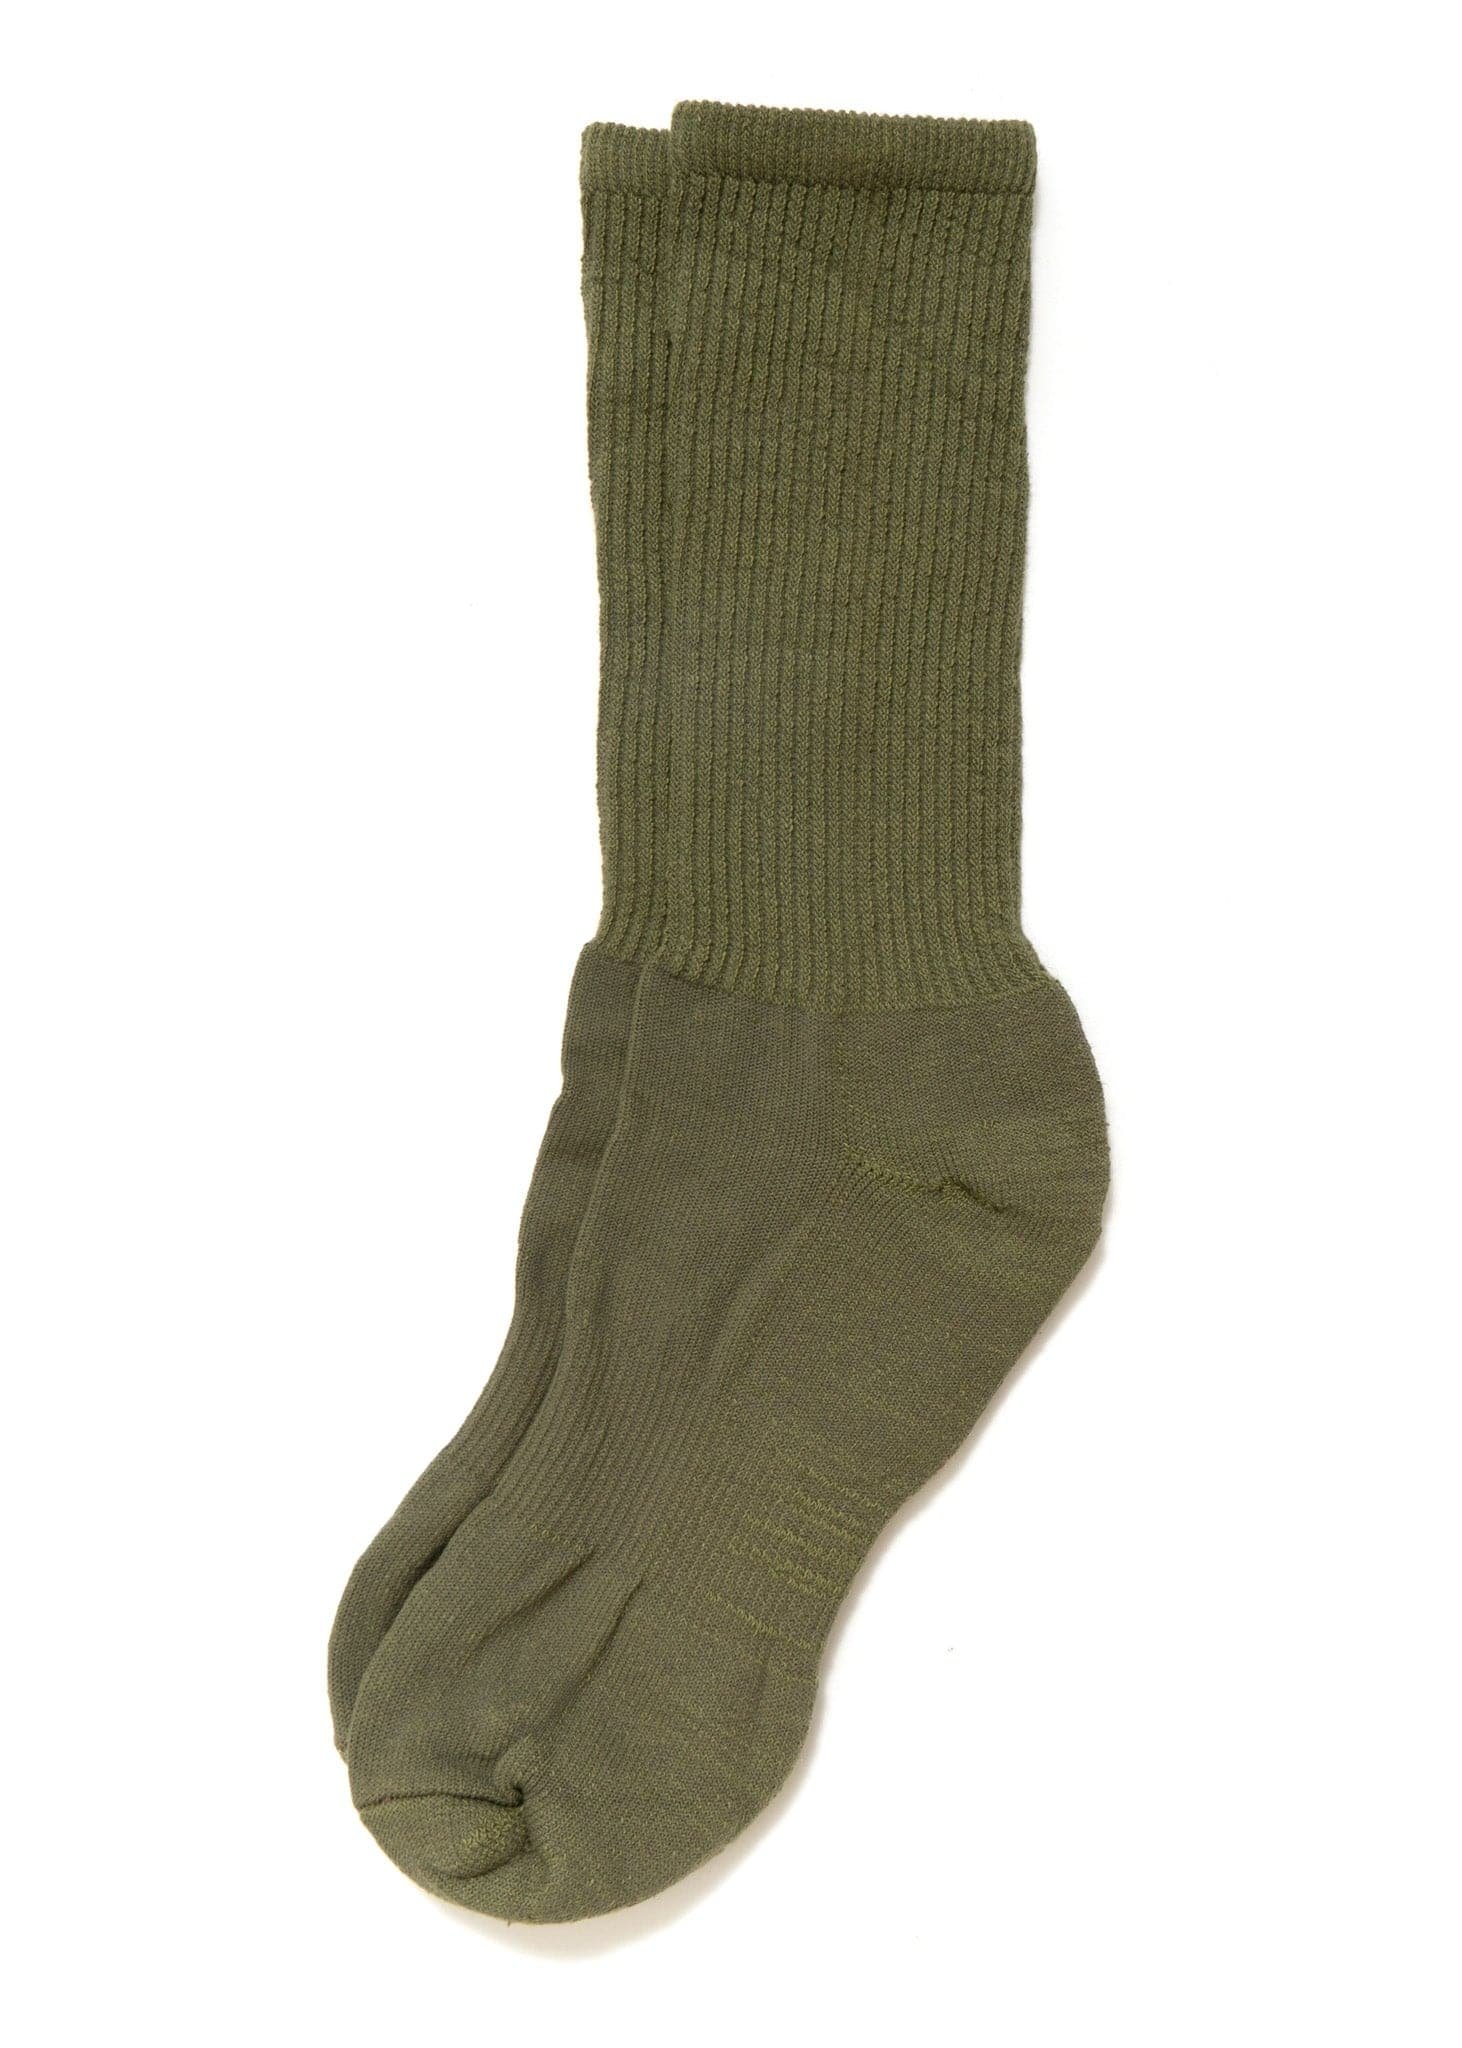 Image of Mil-Spec Sport Socks